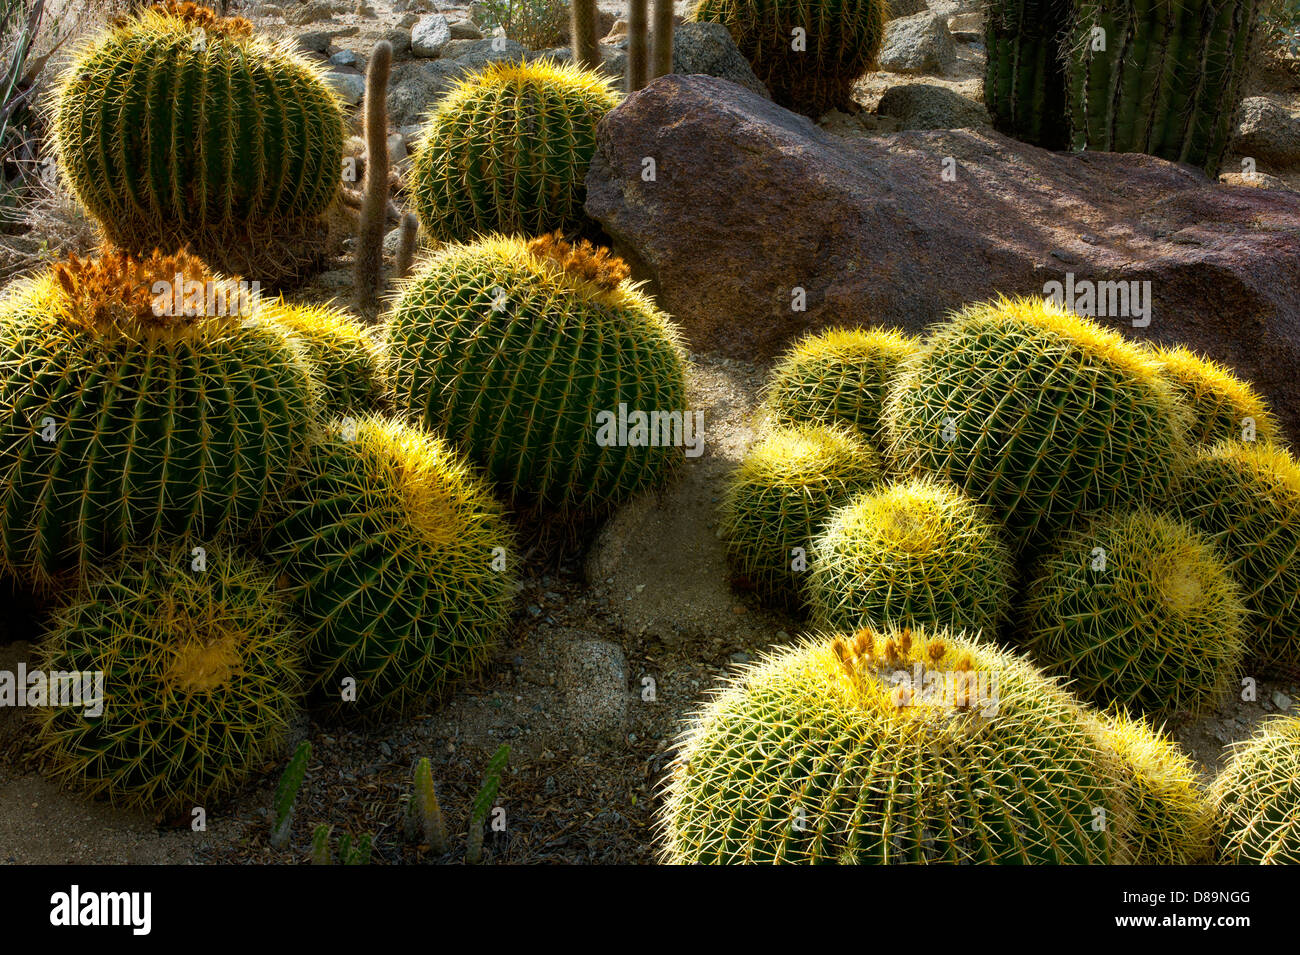 Golden Barrel Cactus. The Living Desert. Palm Desert, California Stock Photo